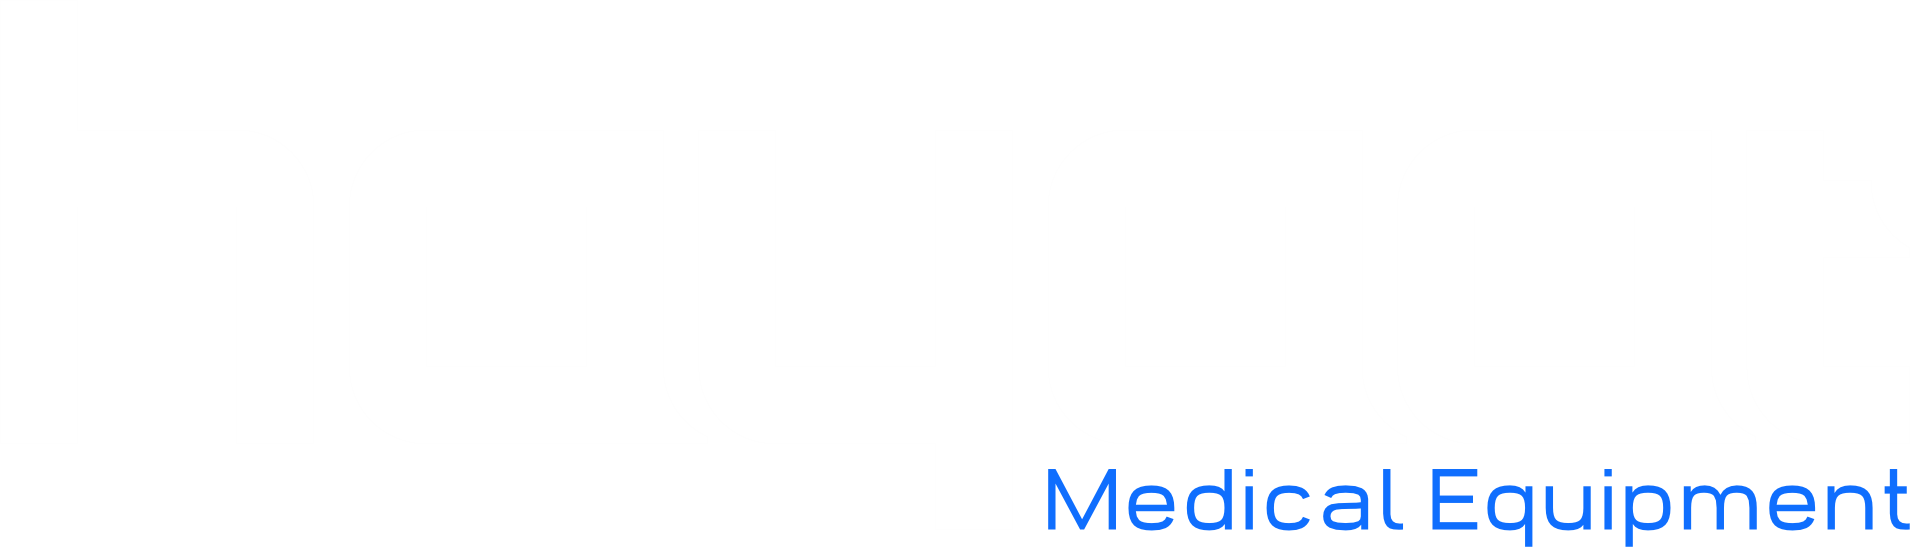 Website logo white